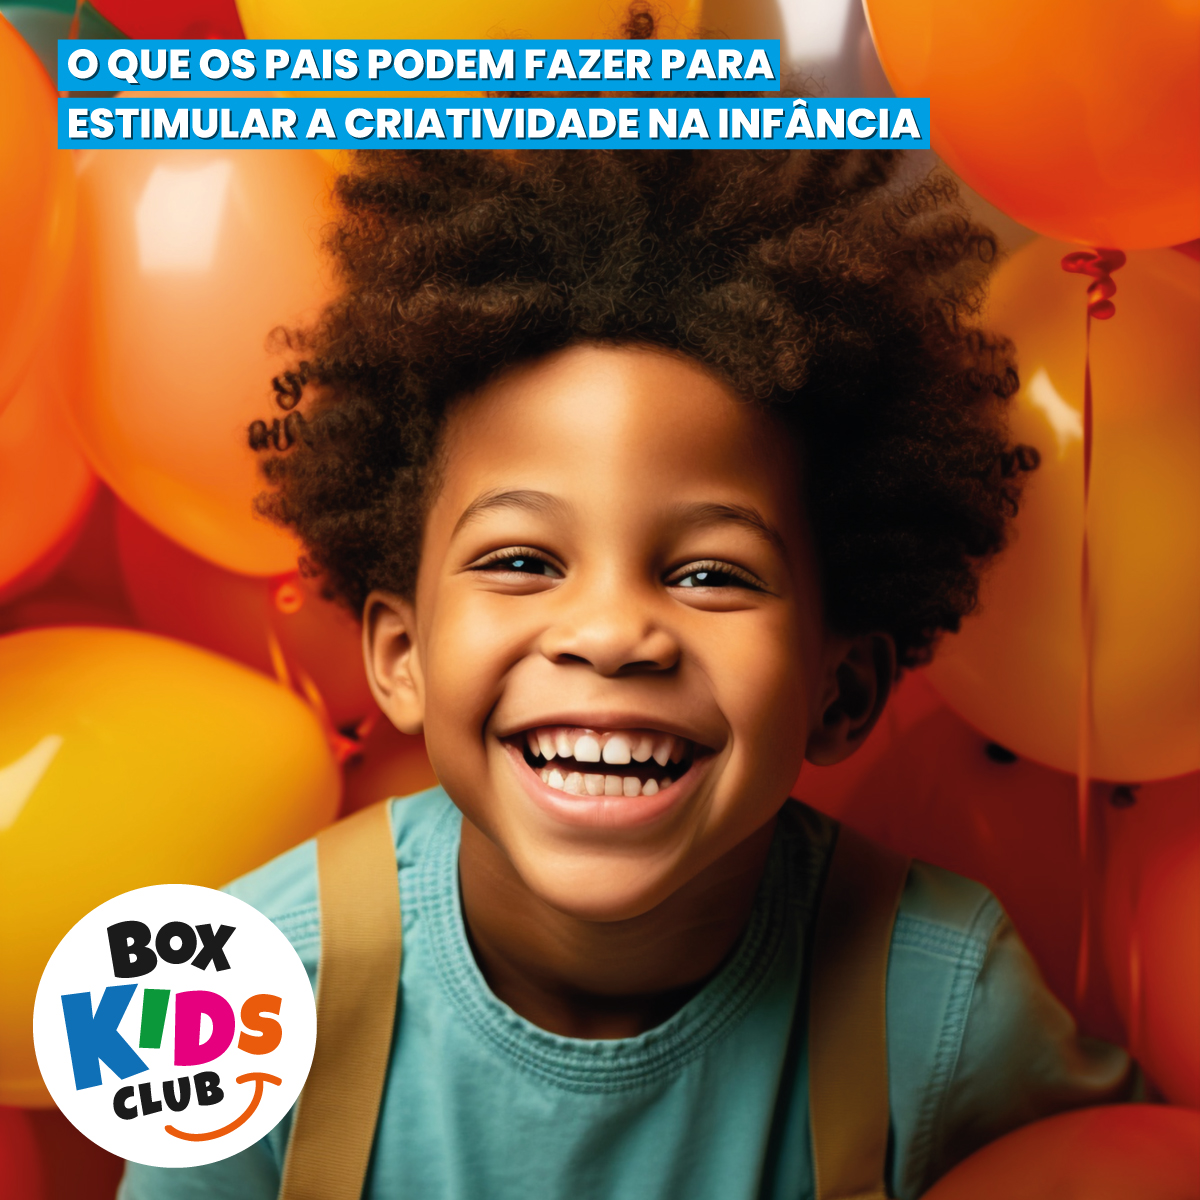 Box-Kids-Club-Assinatura-de-Criatividade-e-Leitura-Criatividade